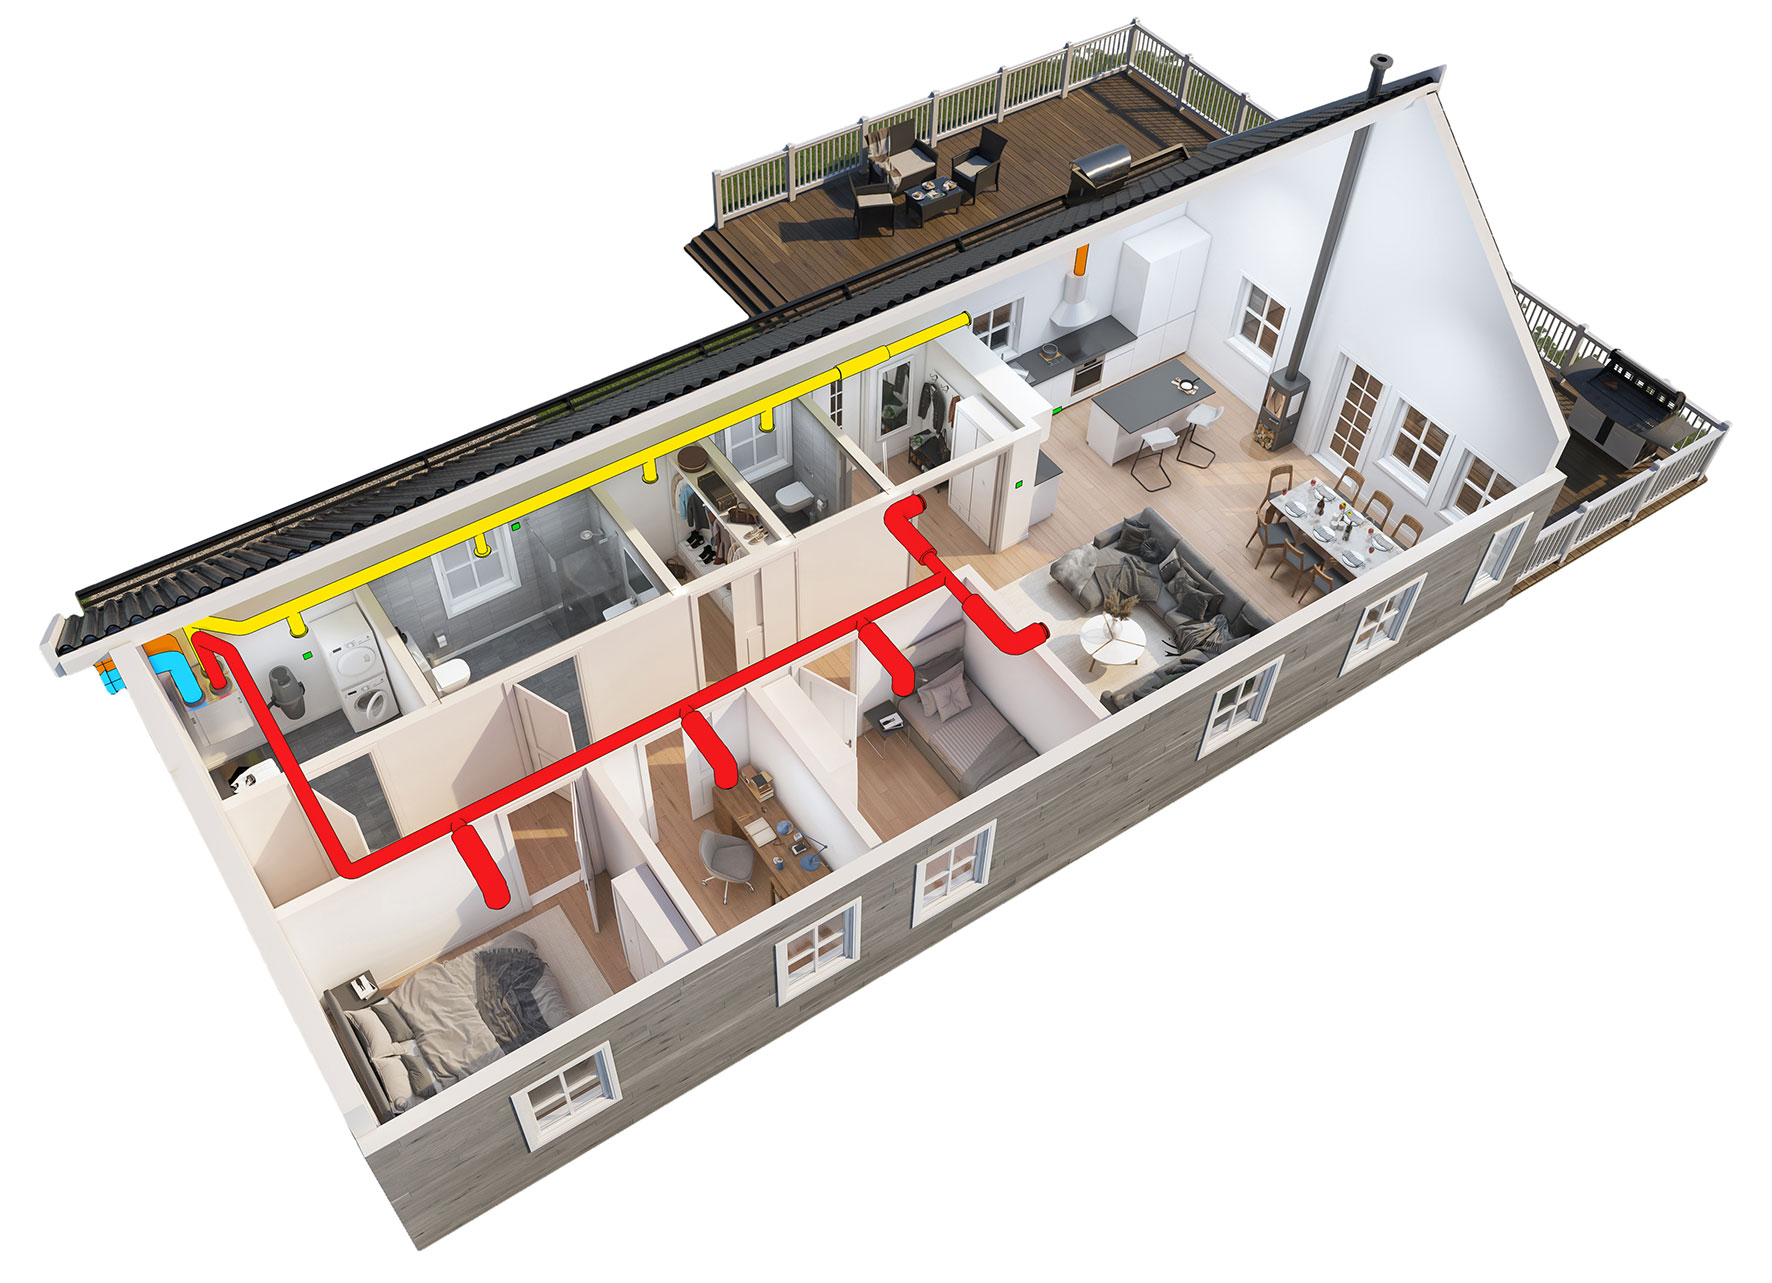 Illustrasjon av bolig med balansert ventilasjon. Avtrekk og tilluft er markert med gule og røde kanaler